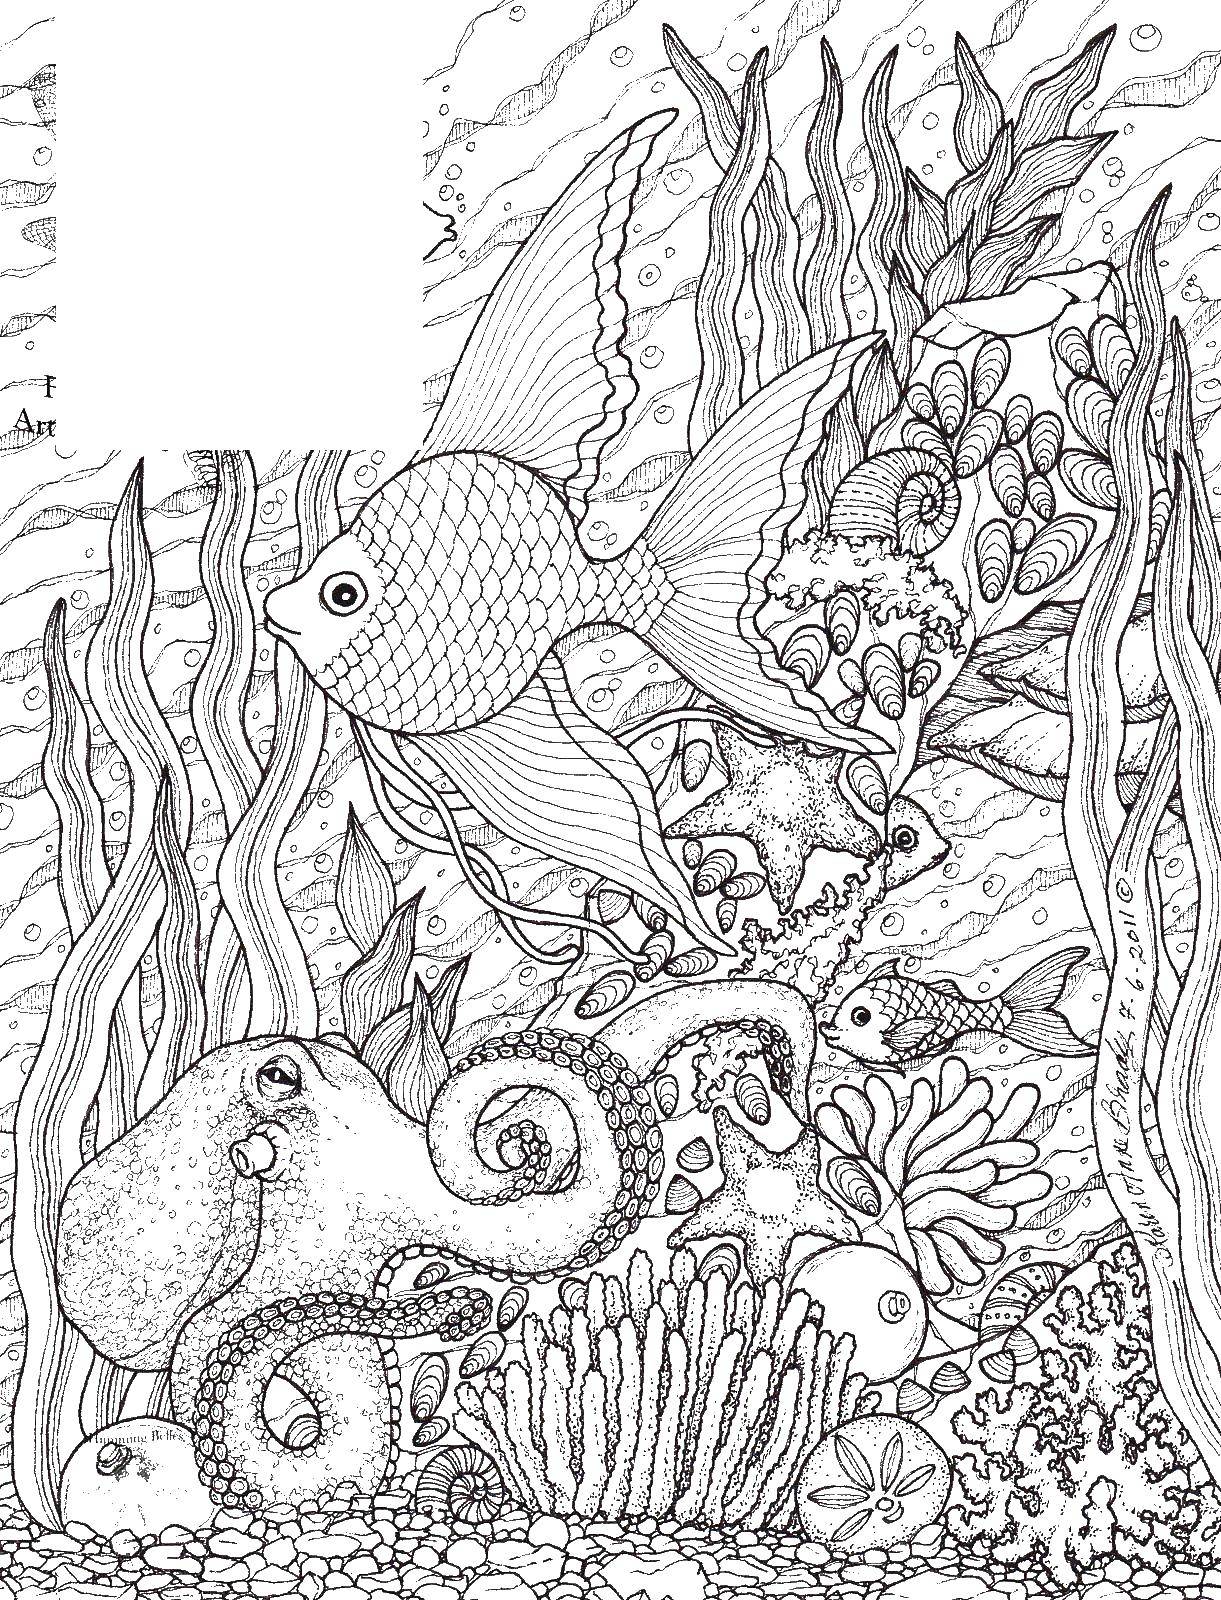 Опис: розмальовки  Восьминіг ловить рибку. Категорія: морське. Теги:  Морський світ, восьминіг.